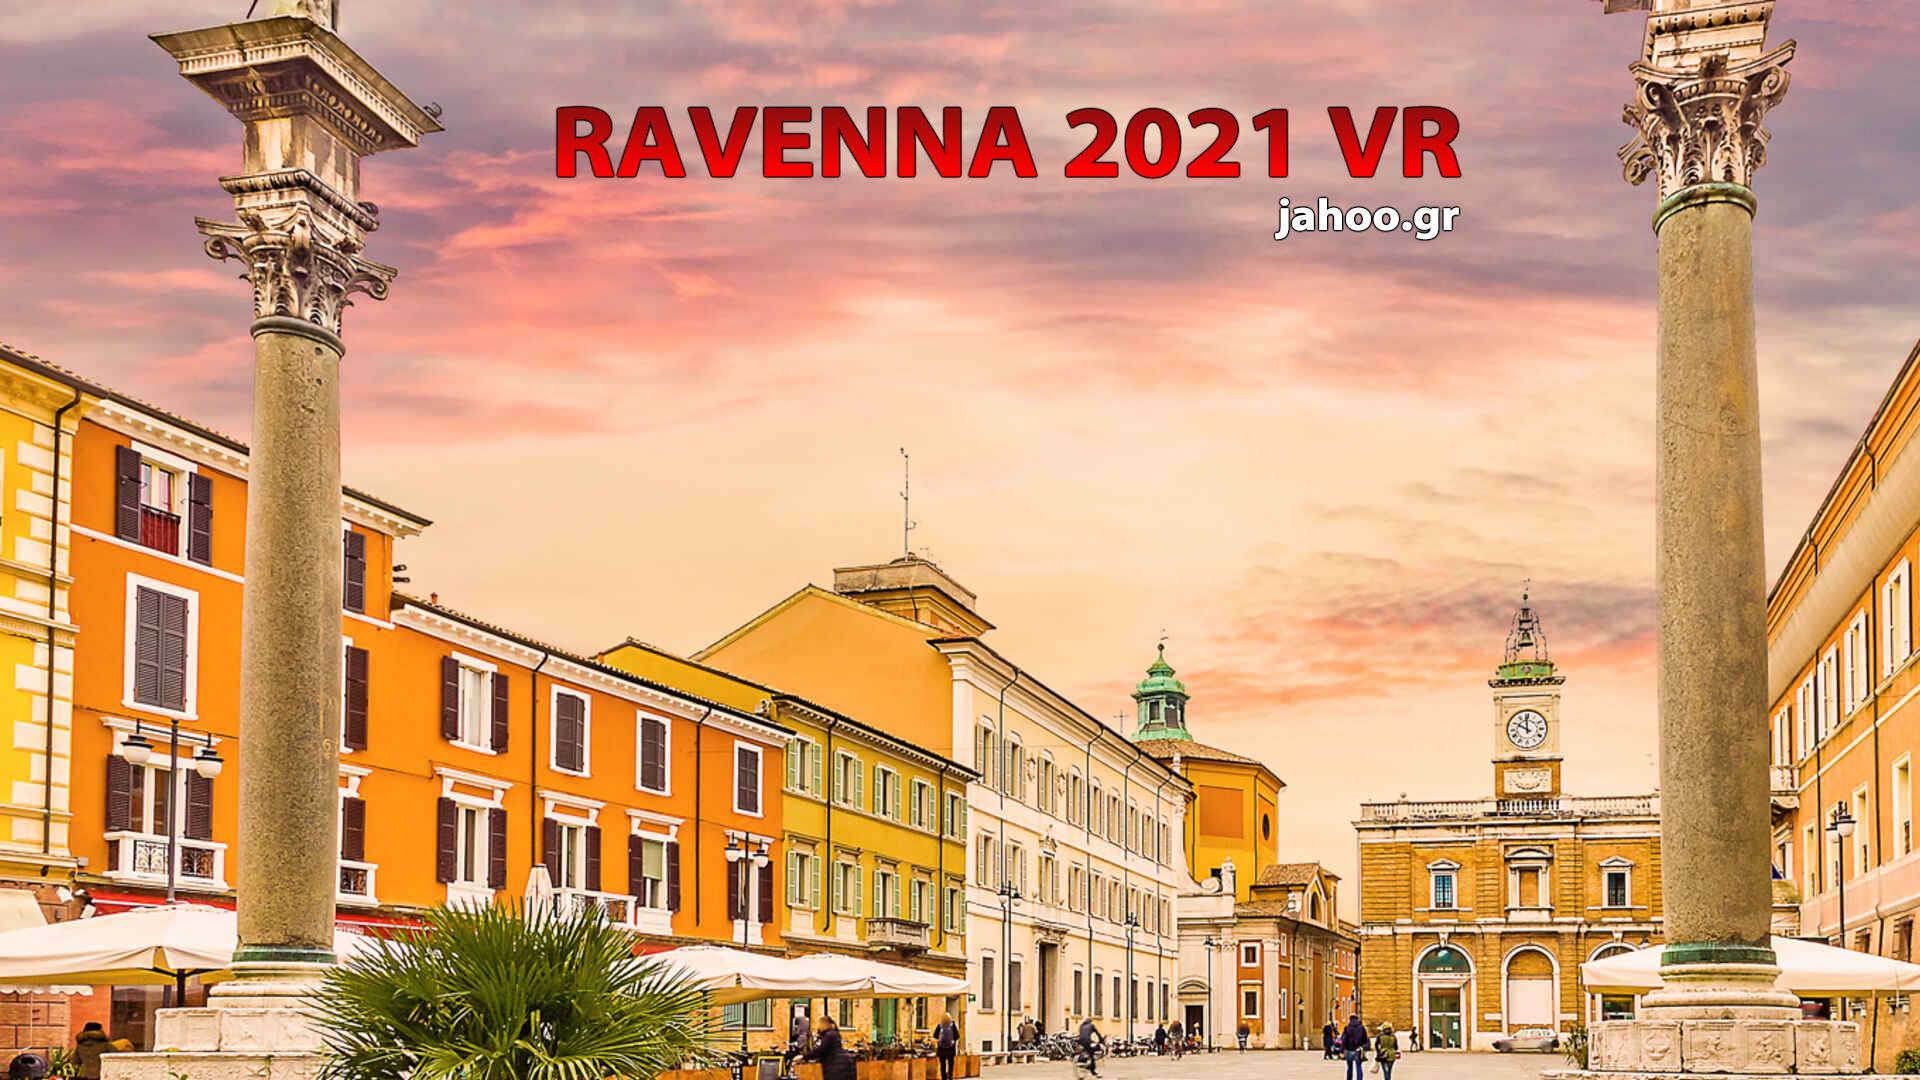 Καλοκαιρινό Ταξίδι του Jahoo στην Ravenna Ιταλίας 2021